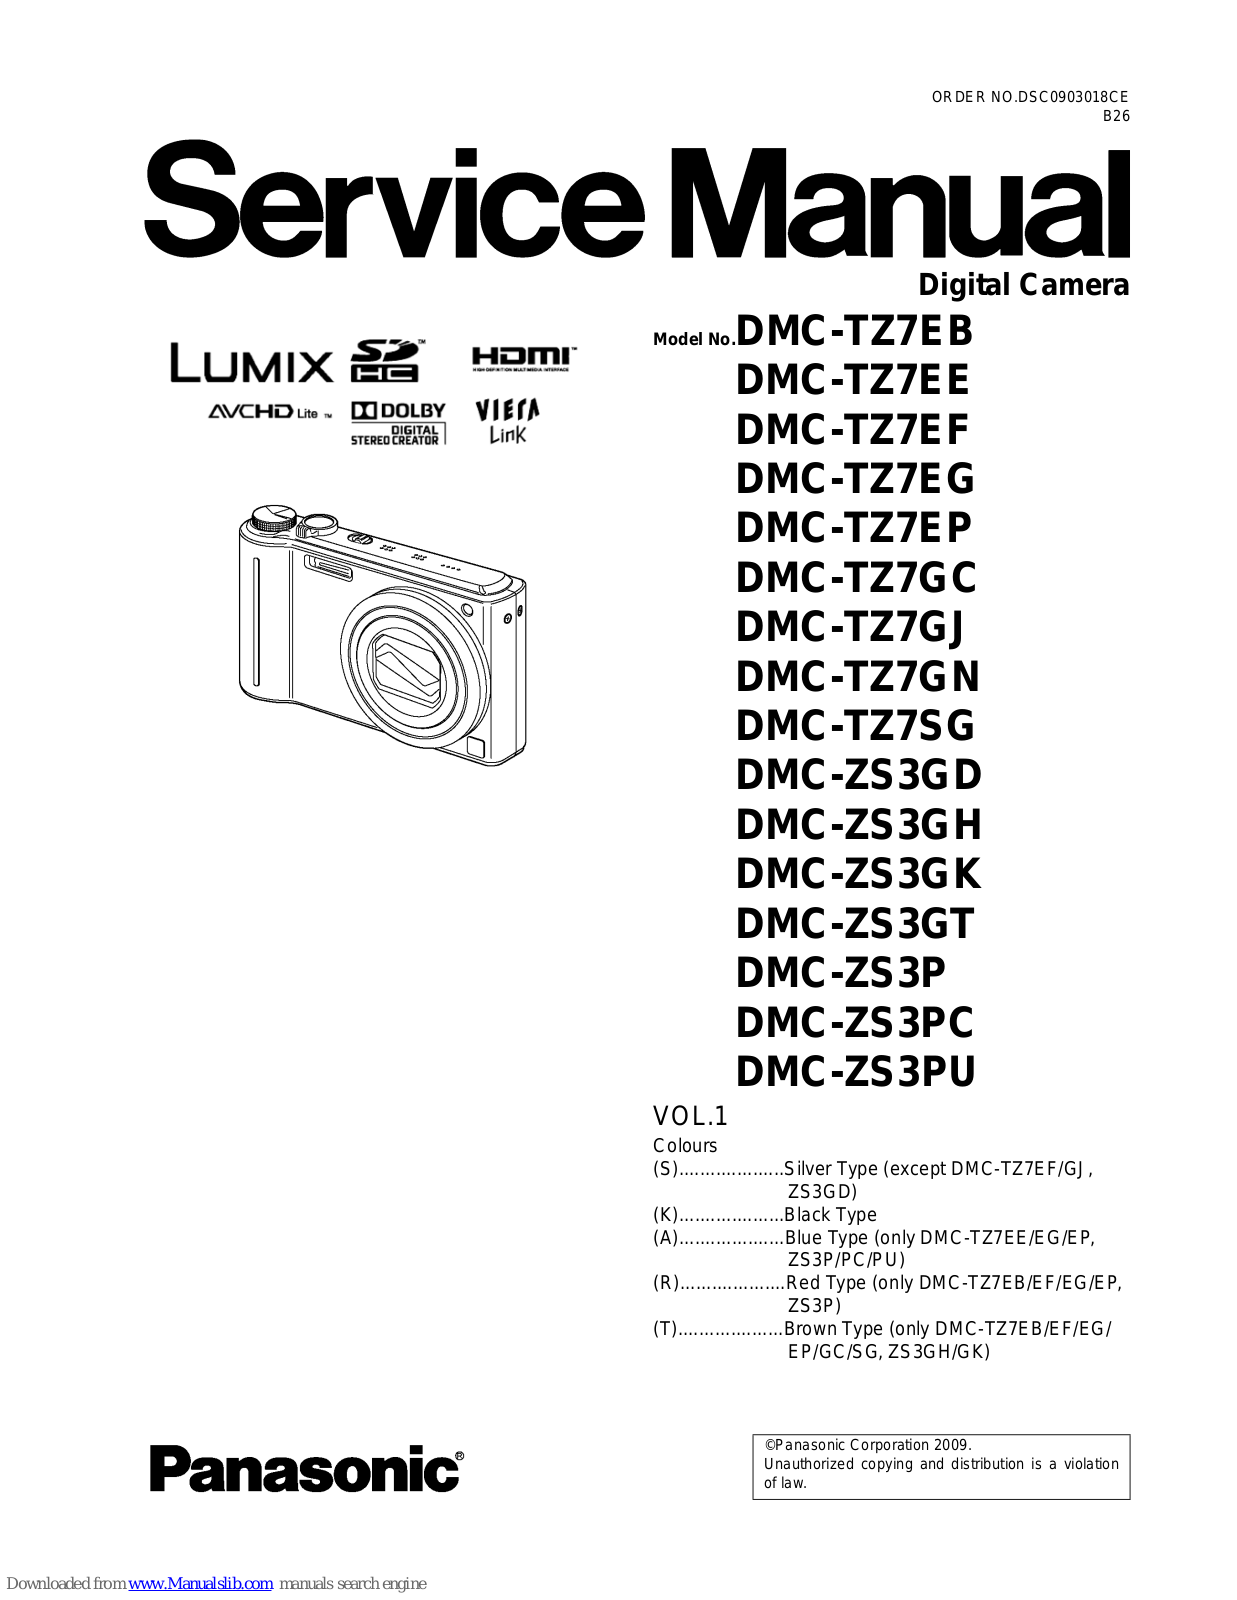 Panasonic DMC-TZ7EF, DMC-TZ7EP, DMC-TZ7EG, DMC-TZ7GC, DMC-TZ7EE Service Manual